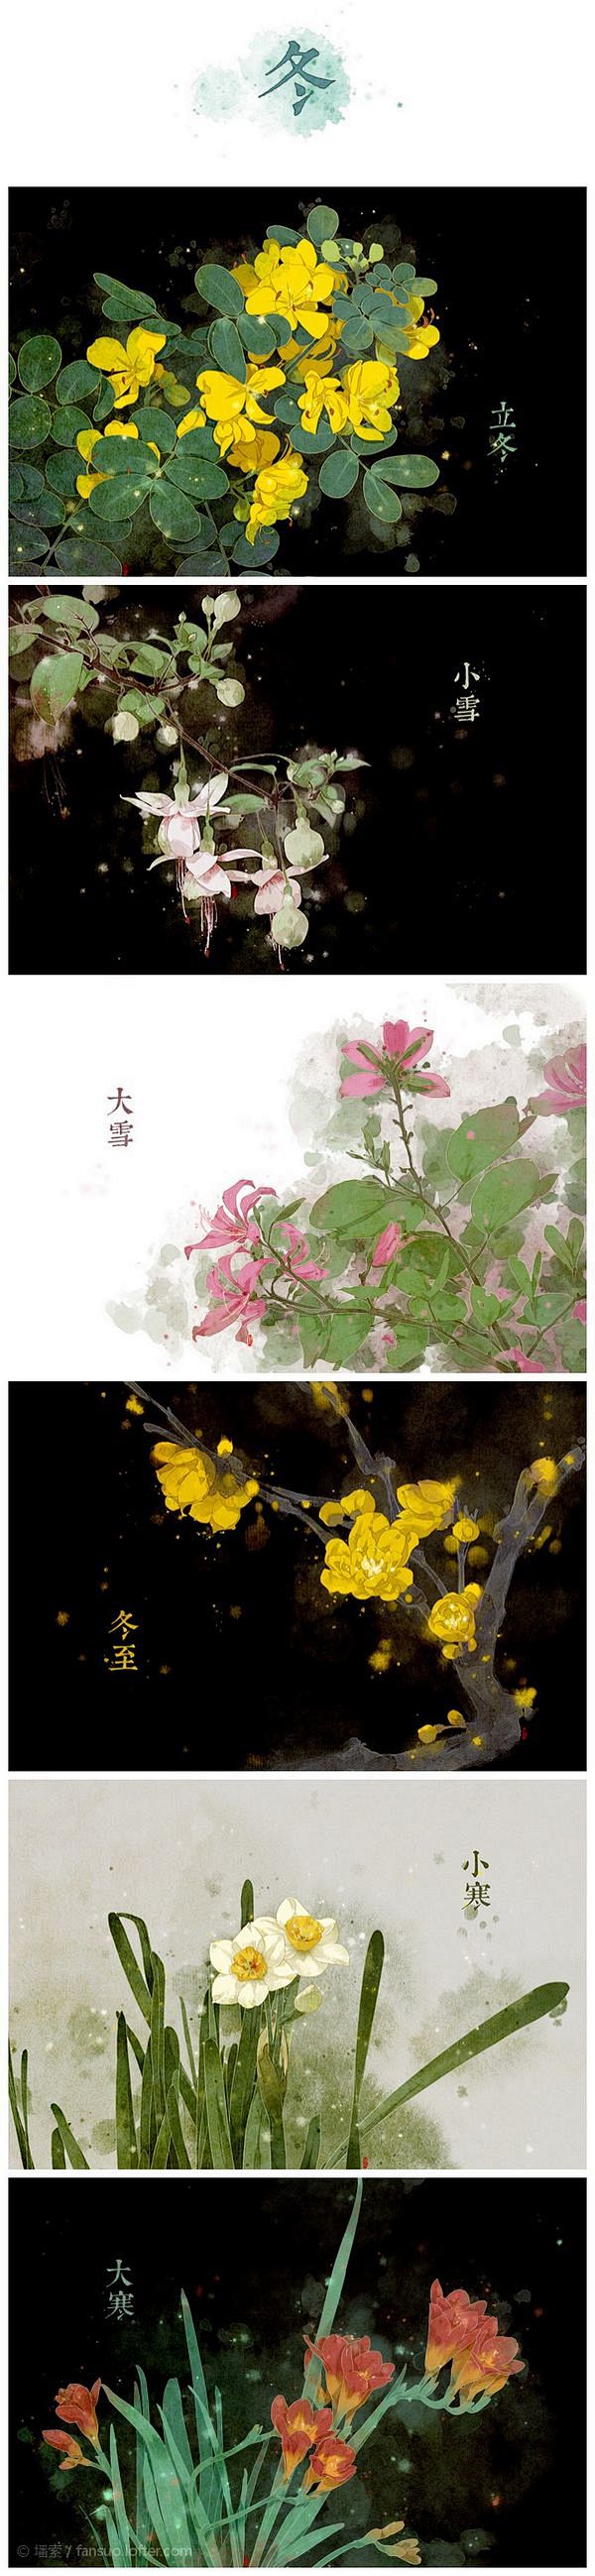 节气之美：二十四节气花卉图 - 图片